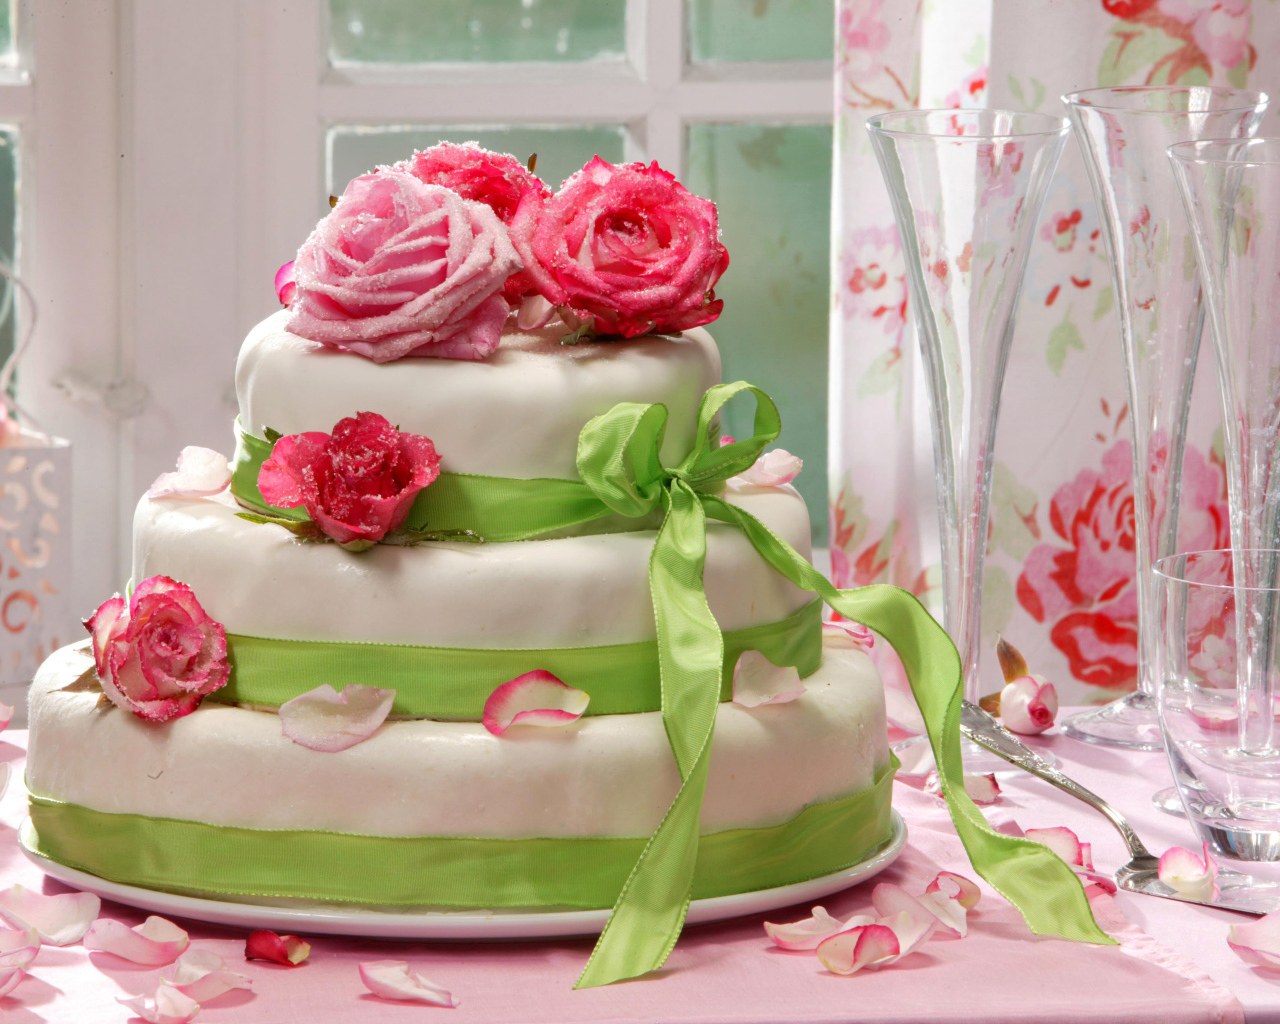 Красивый свадебный торт с розами и лентой